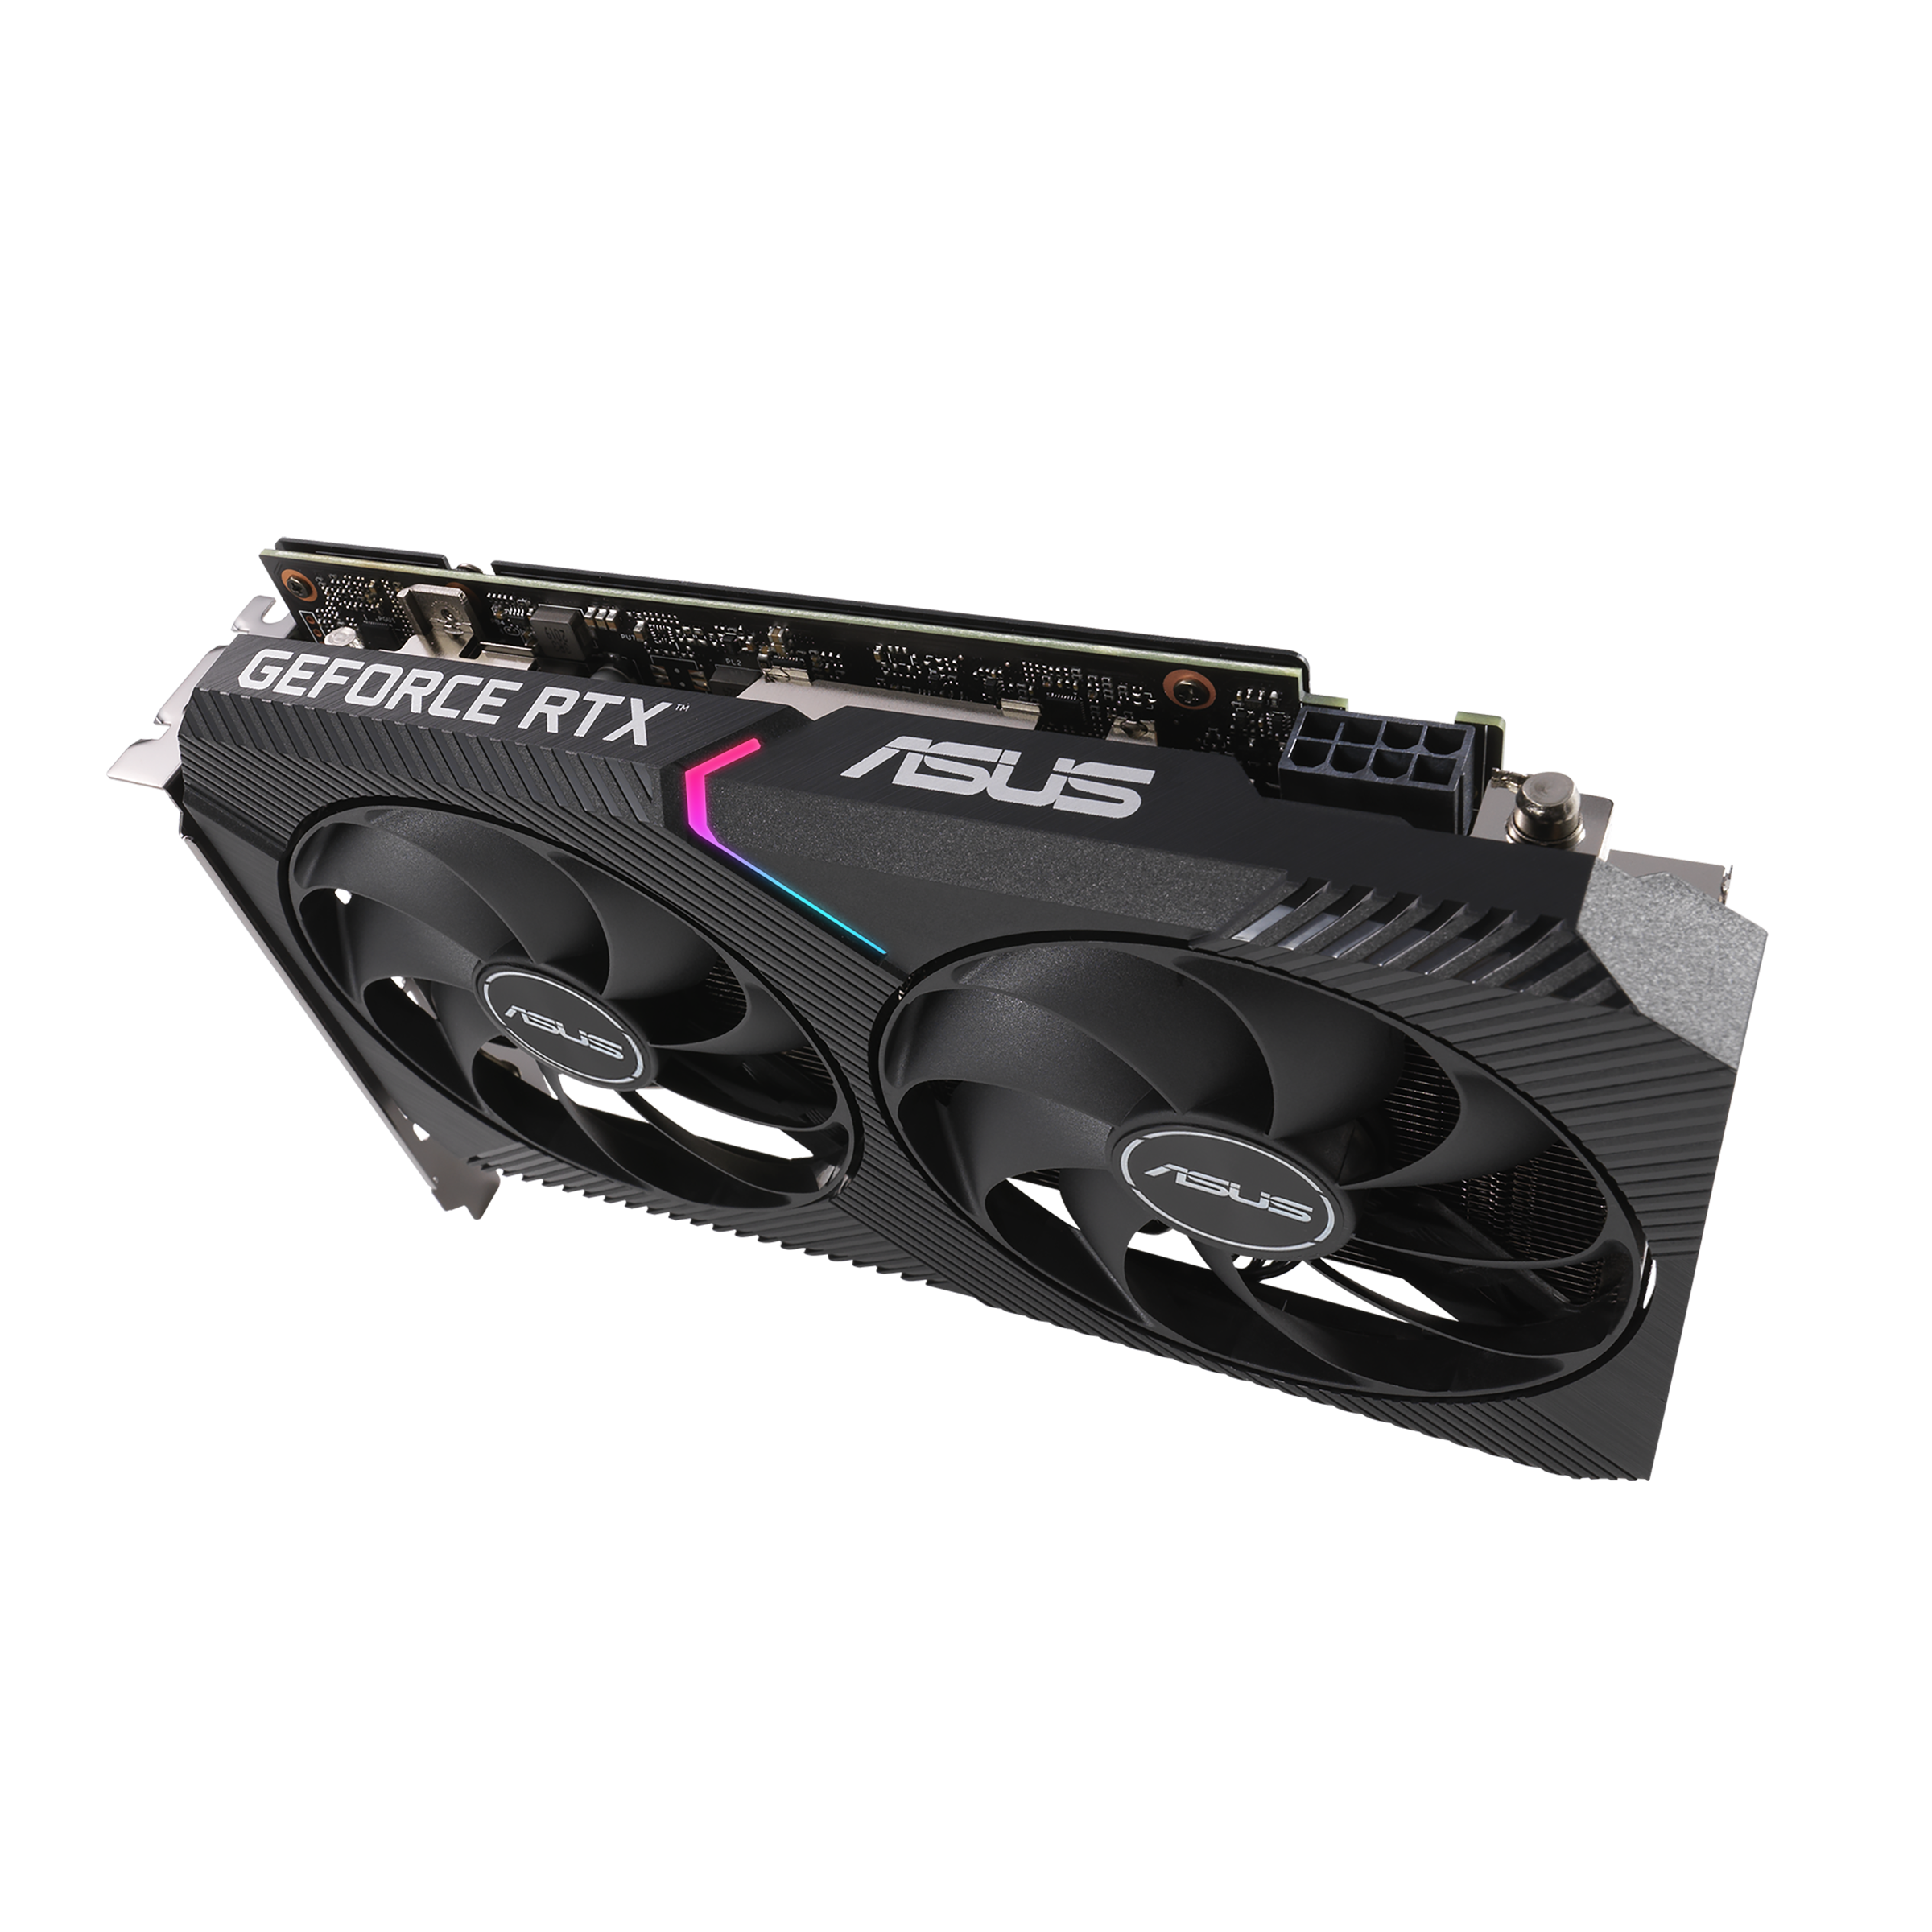 Dual GeForce 3060 12GB | Graphics Card | ASUS Global